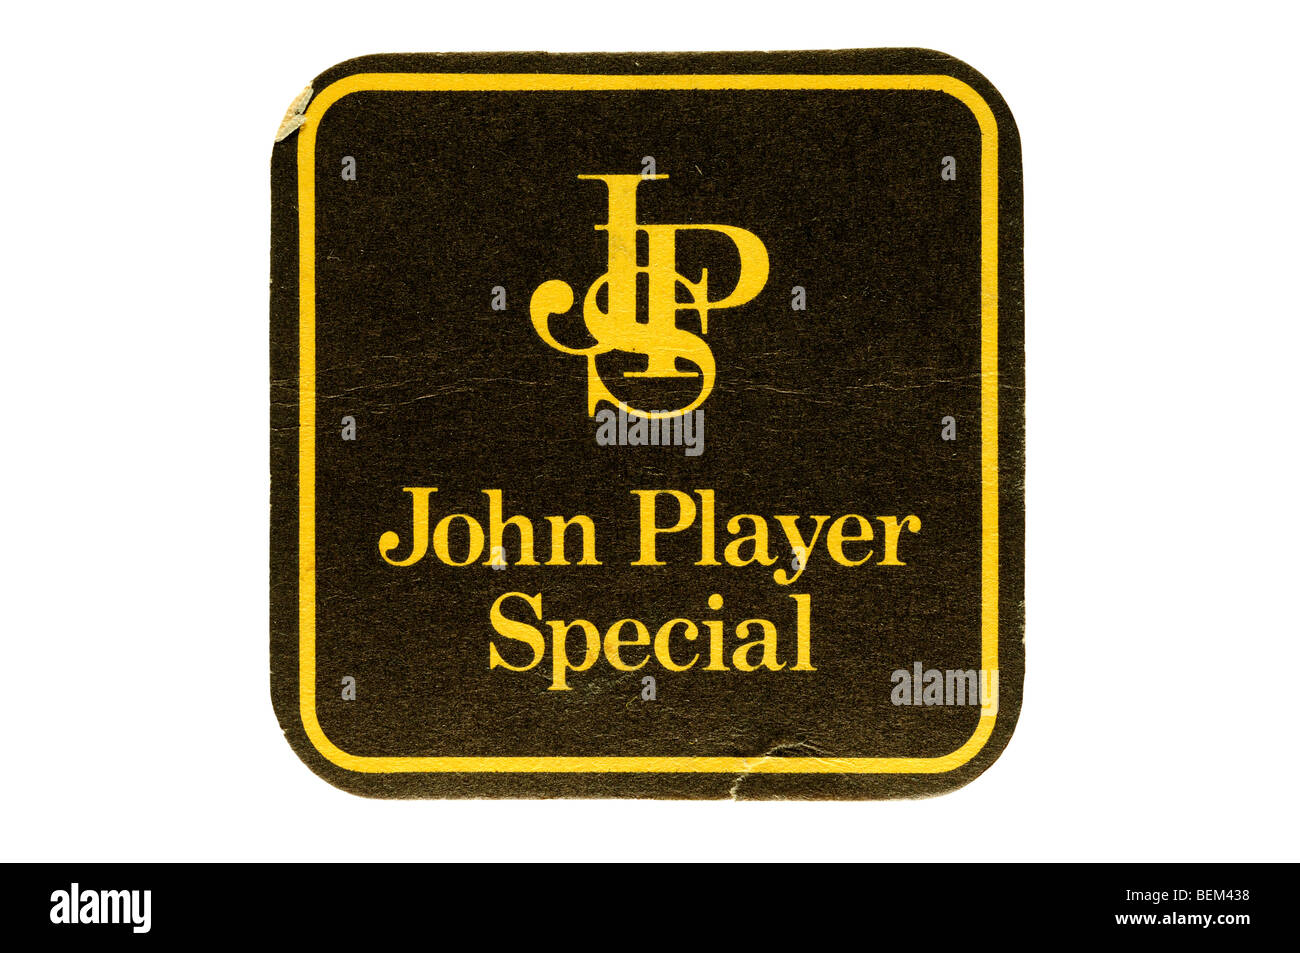 Jps john player special Banque de photographies et d'images à haute  résolution - Alamy